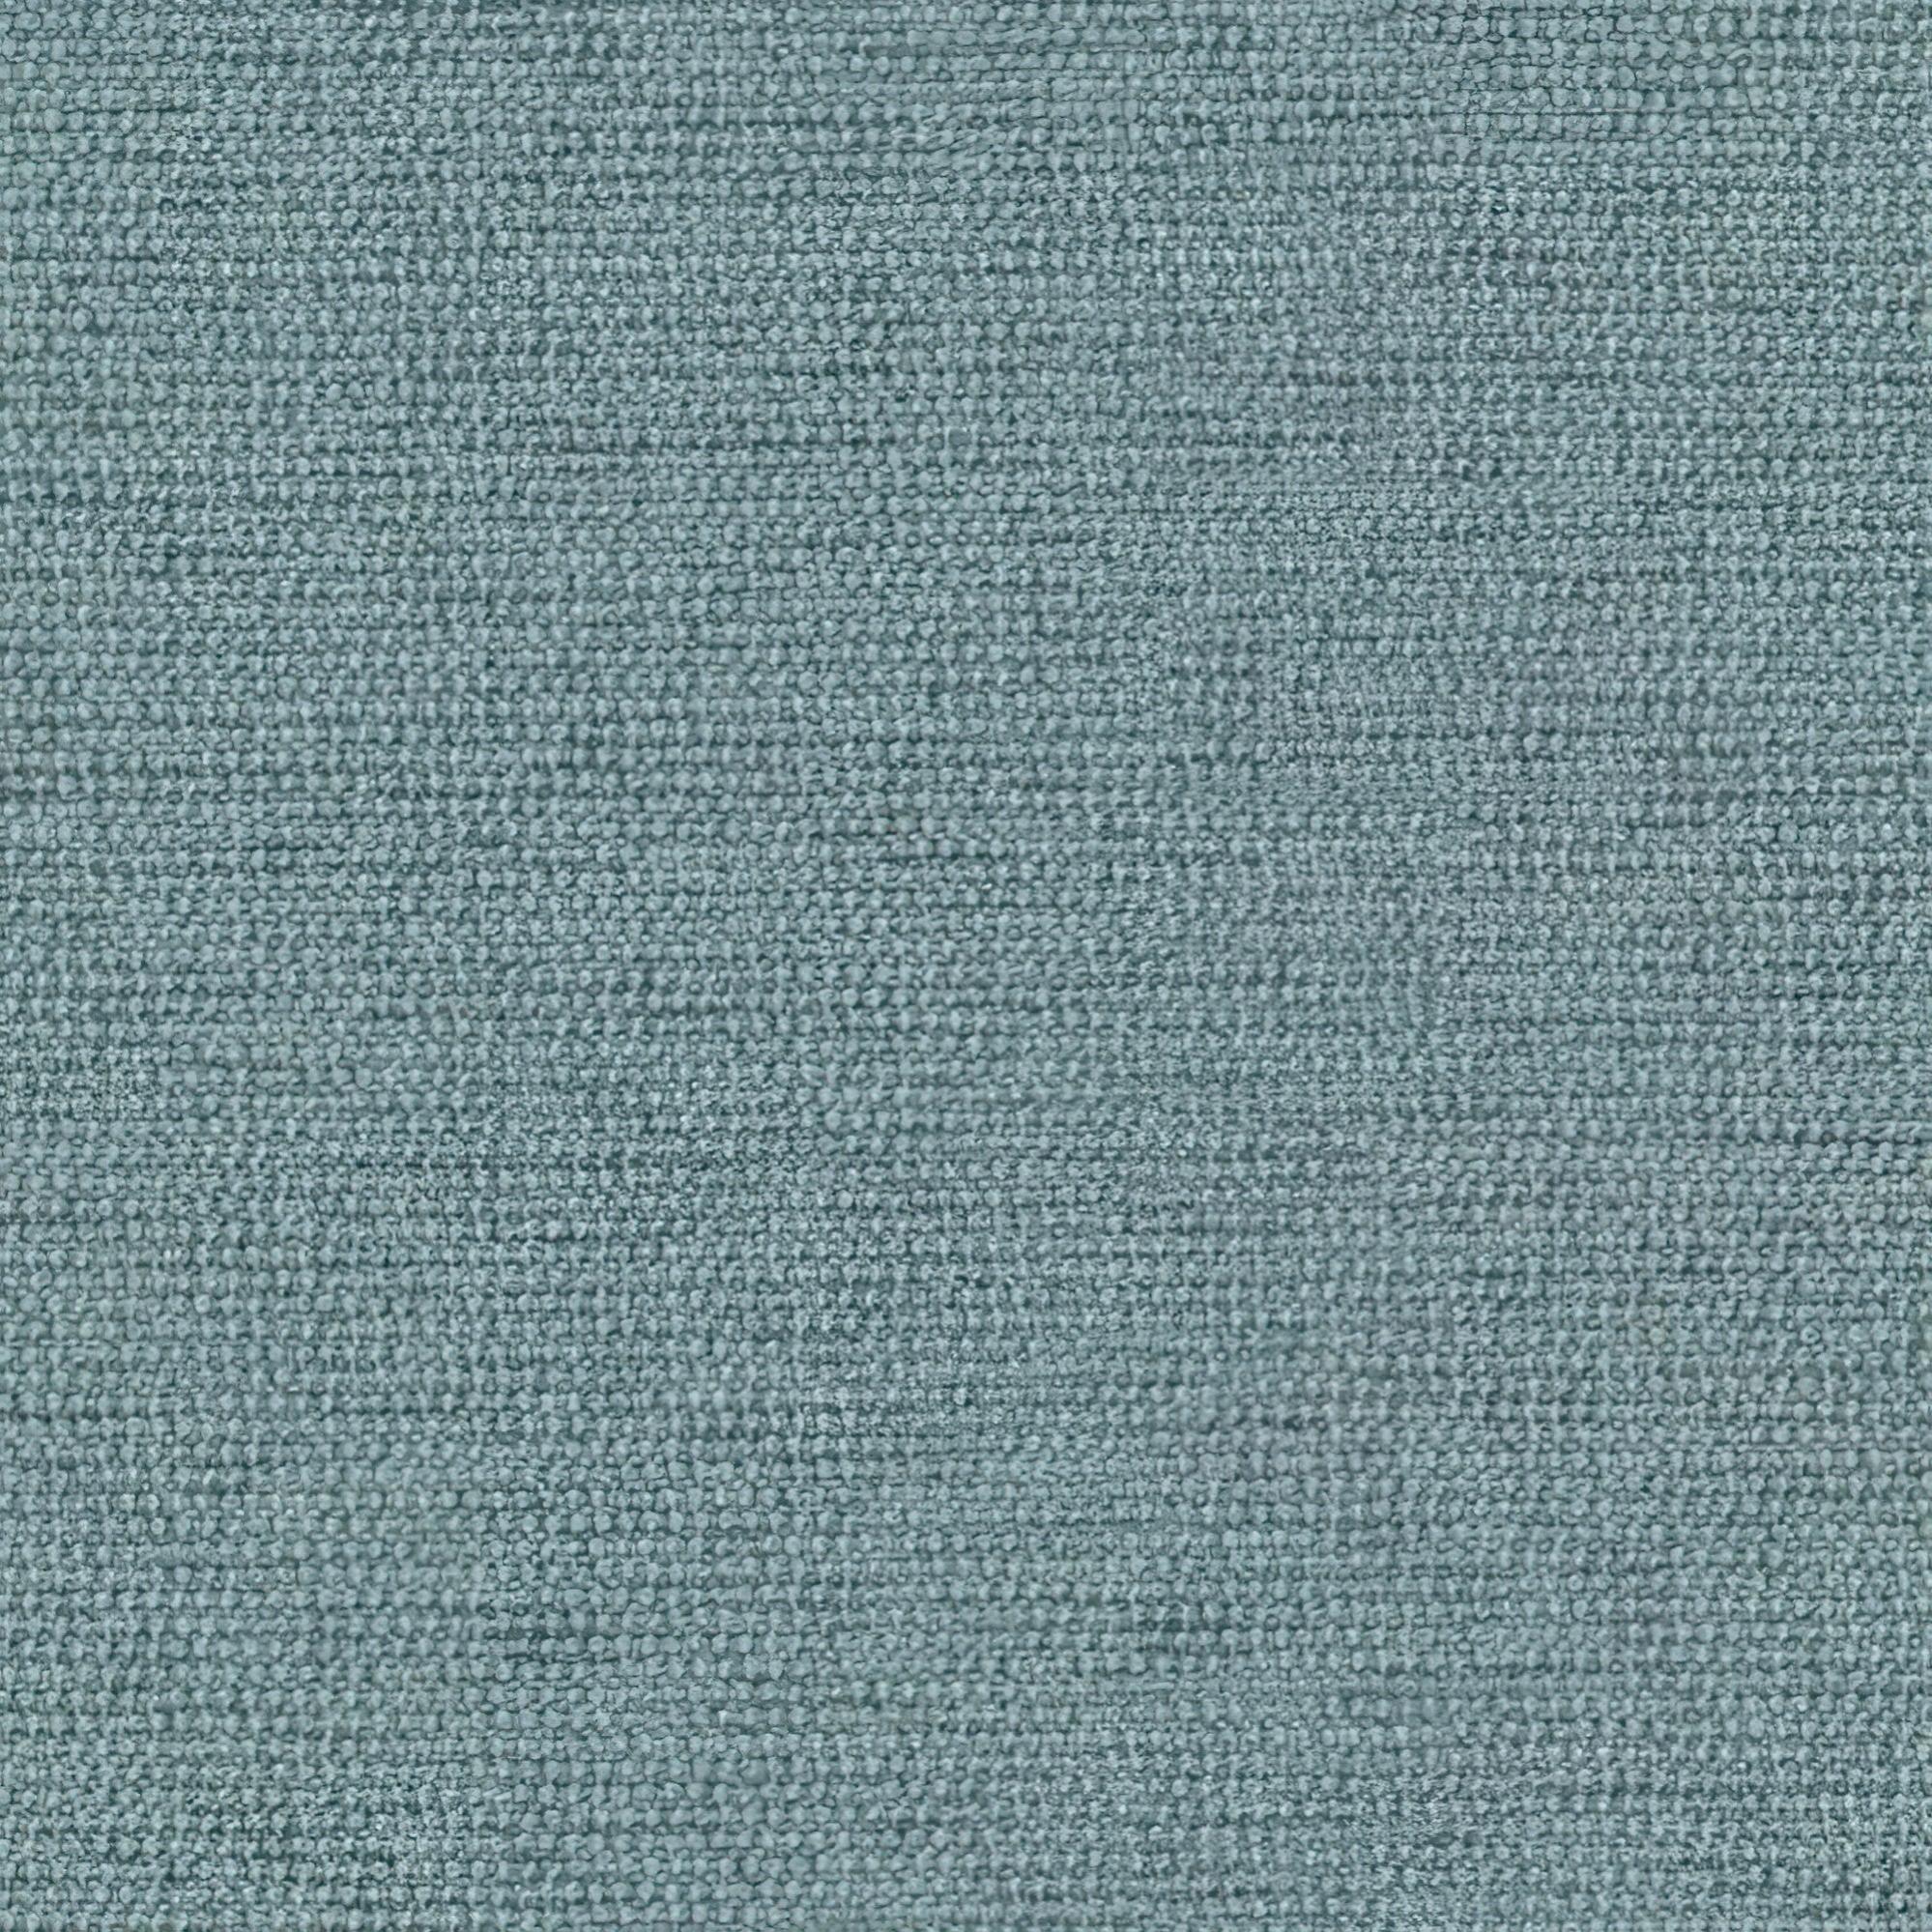 Tela al corte tapicería jacquard aberdeen verde ancho 140 cm